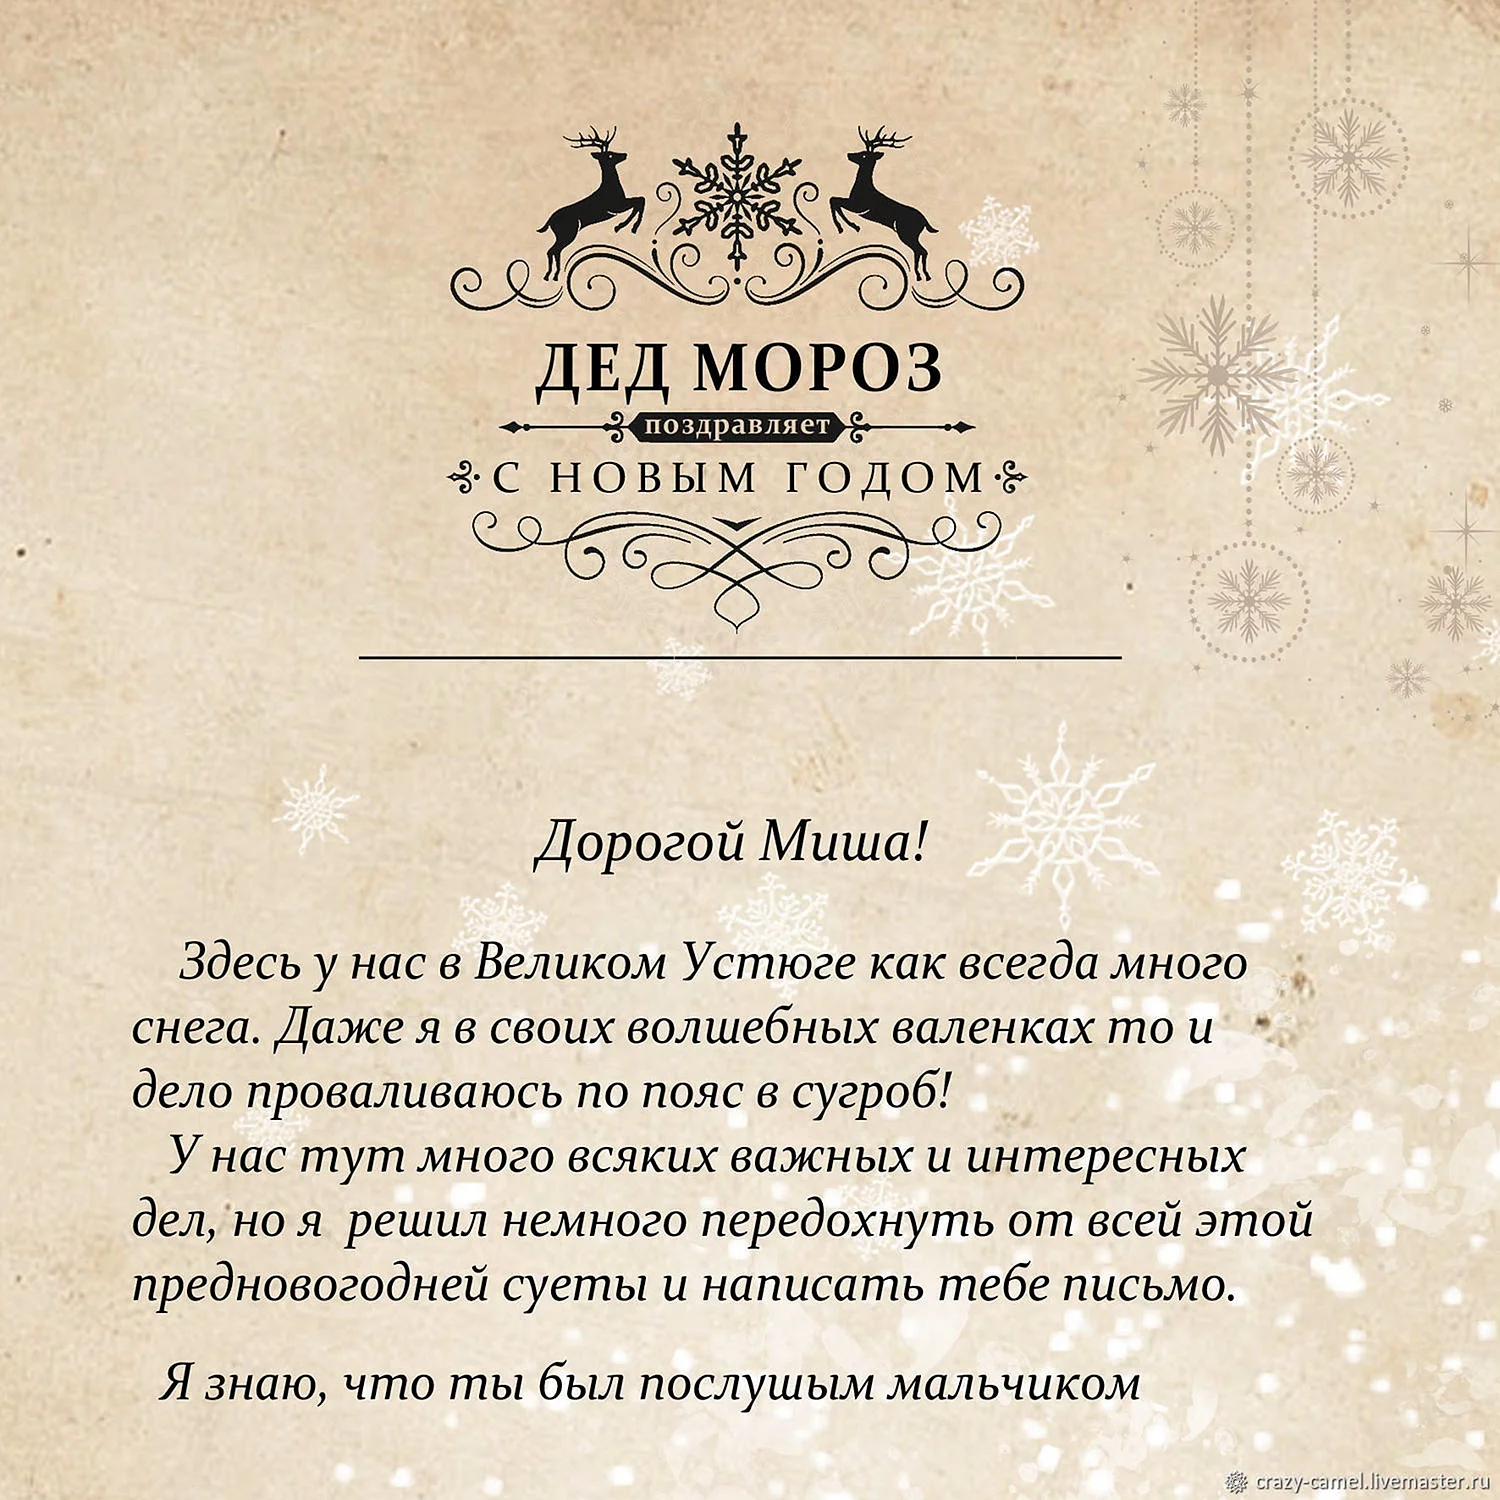 Письмо от Деда Мороза Мише